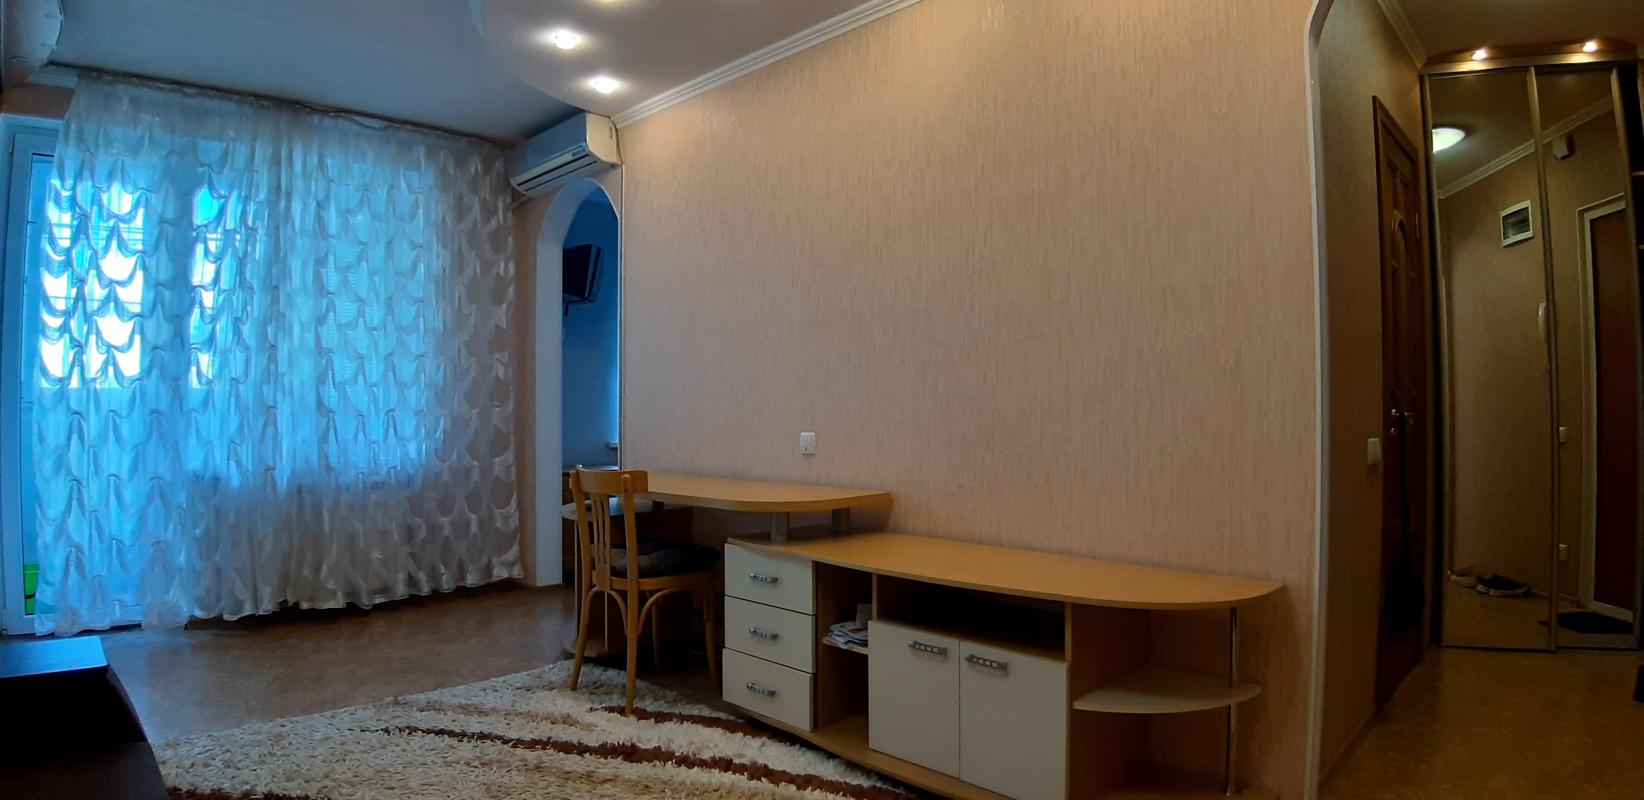 Долгосрочная аренда 1 комнатной квартиры Балакирева ул. 20